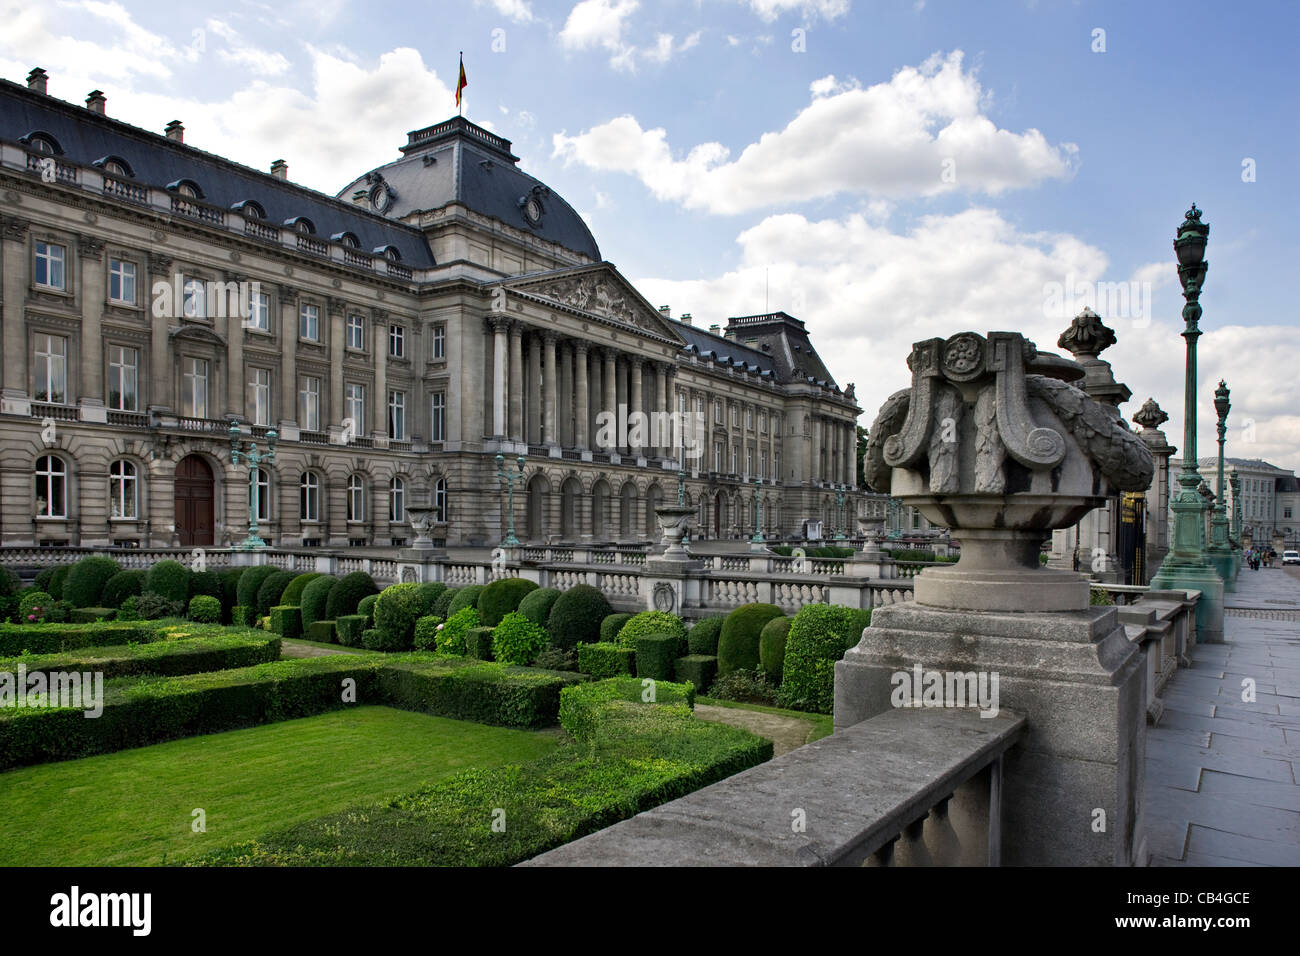 The Royal Palace of Brussels / Koninklijk Paleis van Brussel, Belgium Stock Photo